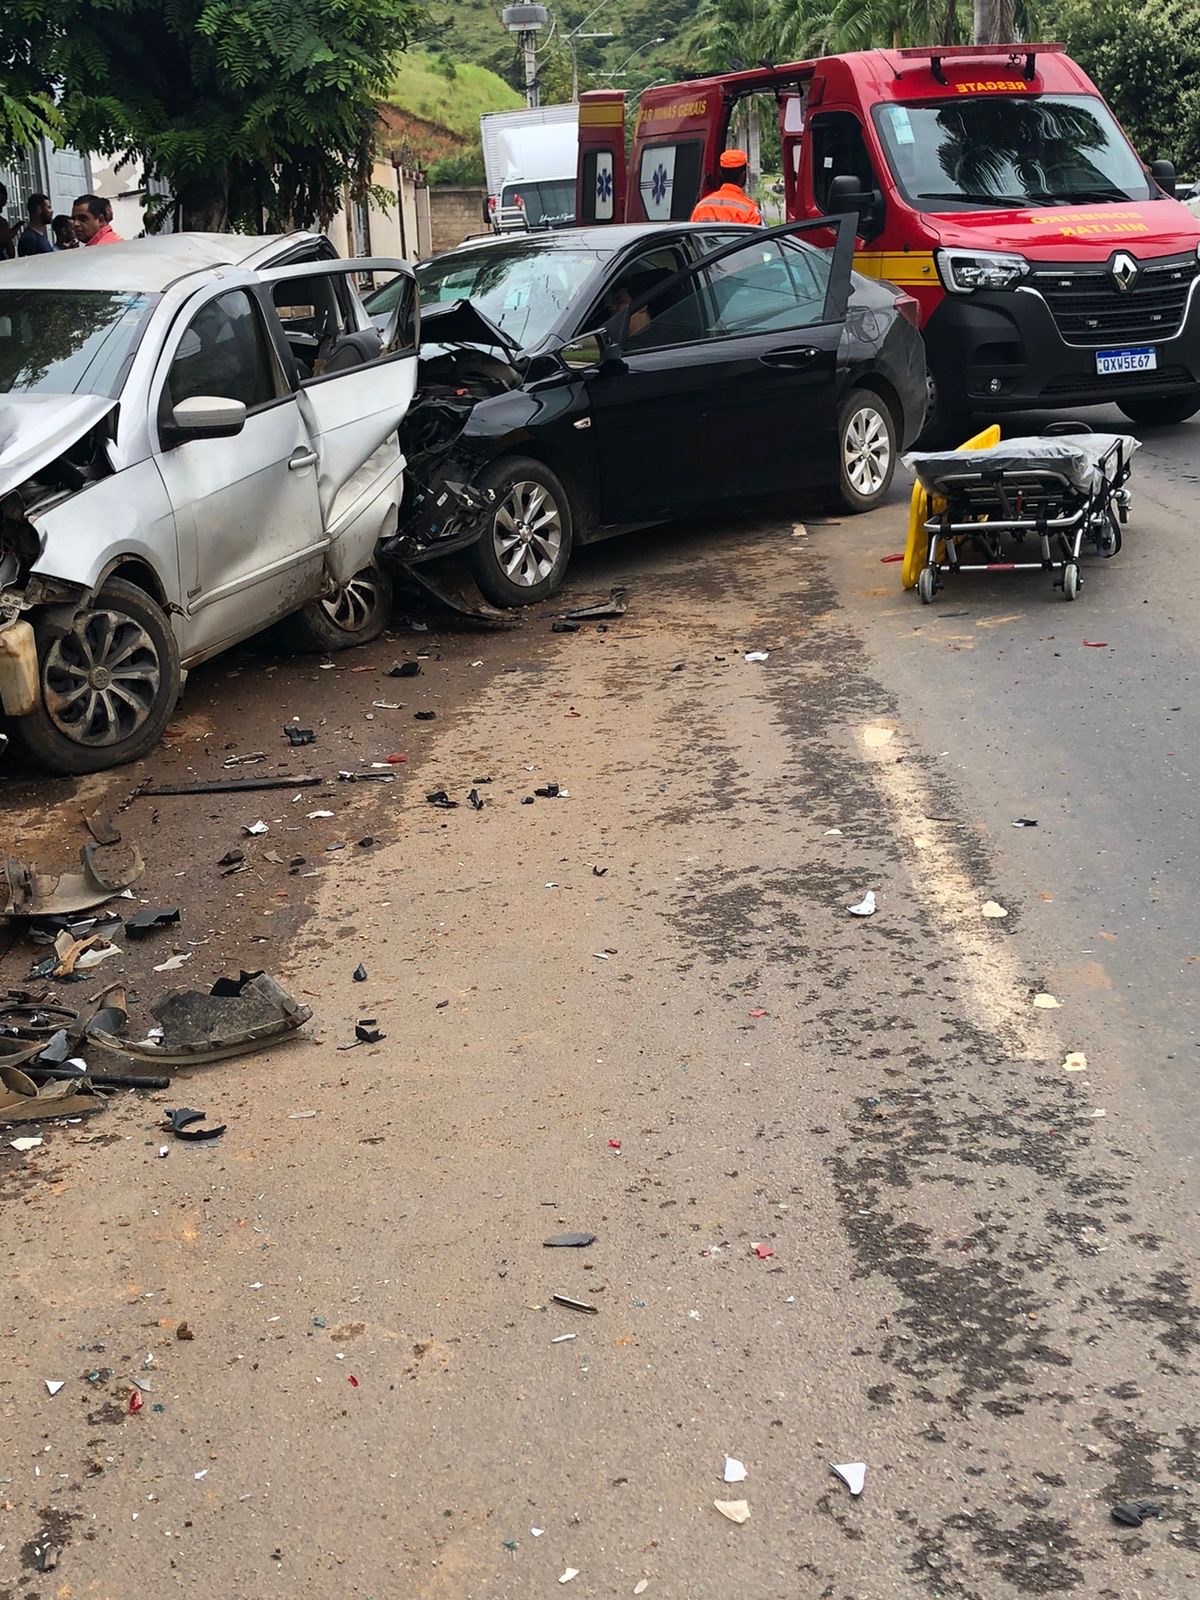 4 carros entram em colisão na Av. Adibh Cadah em Teófilo Otoni nesta manhã de segunda-feira